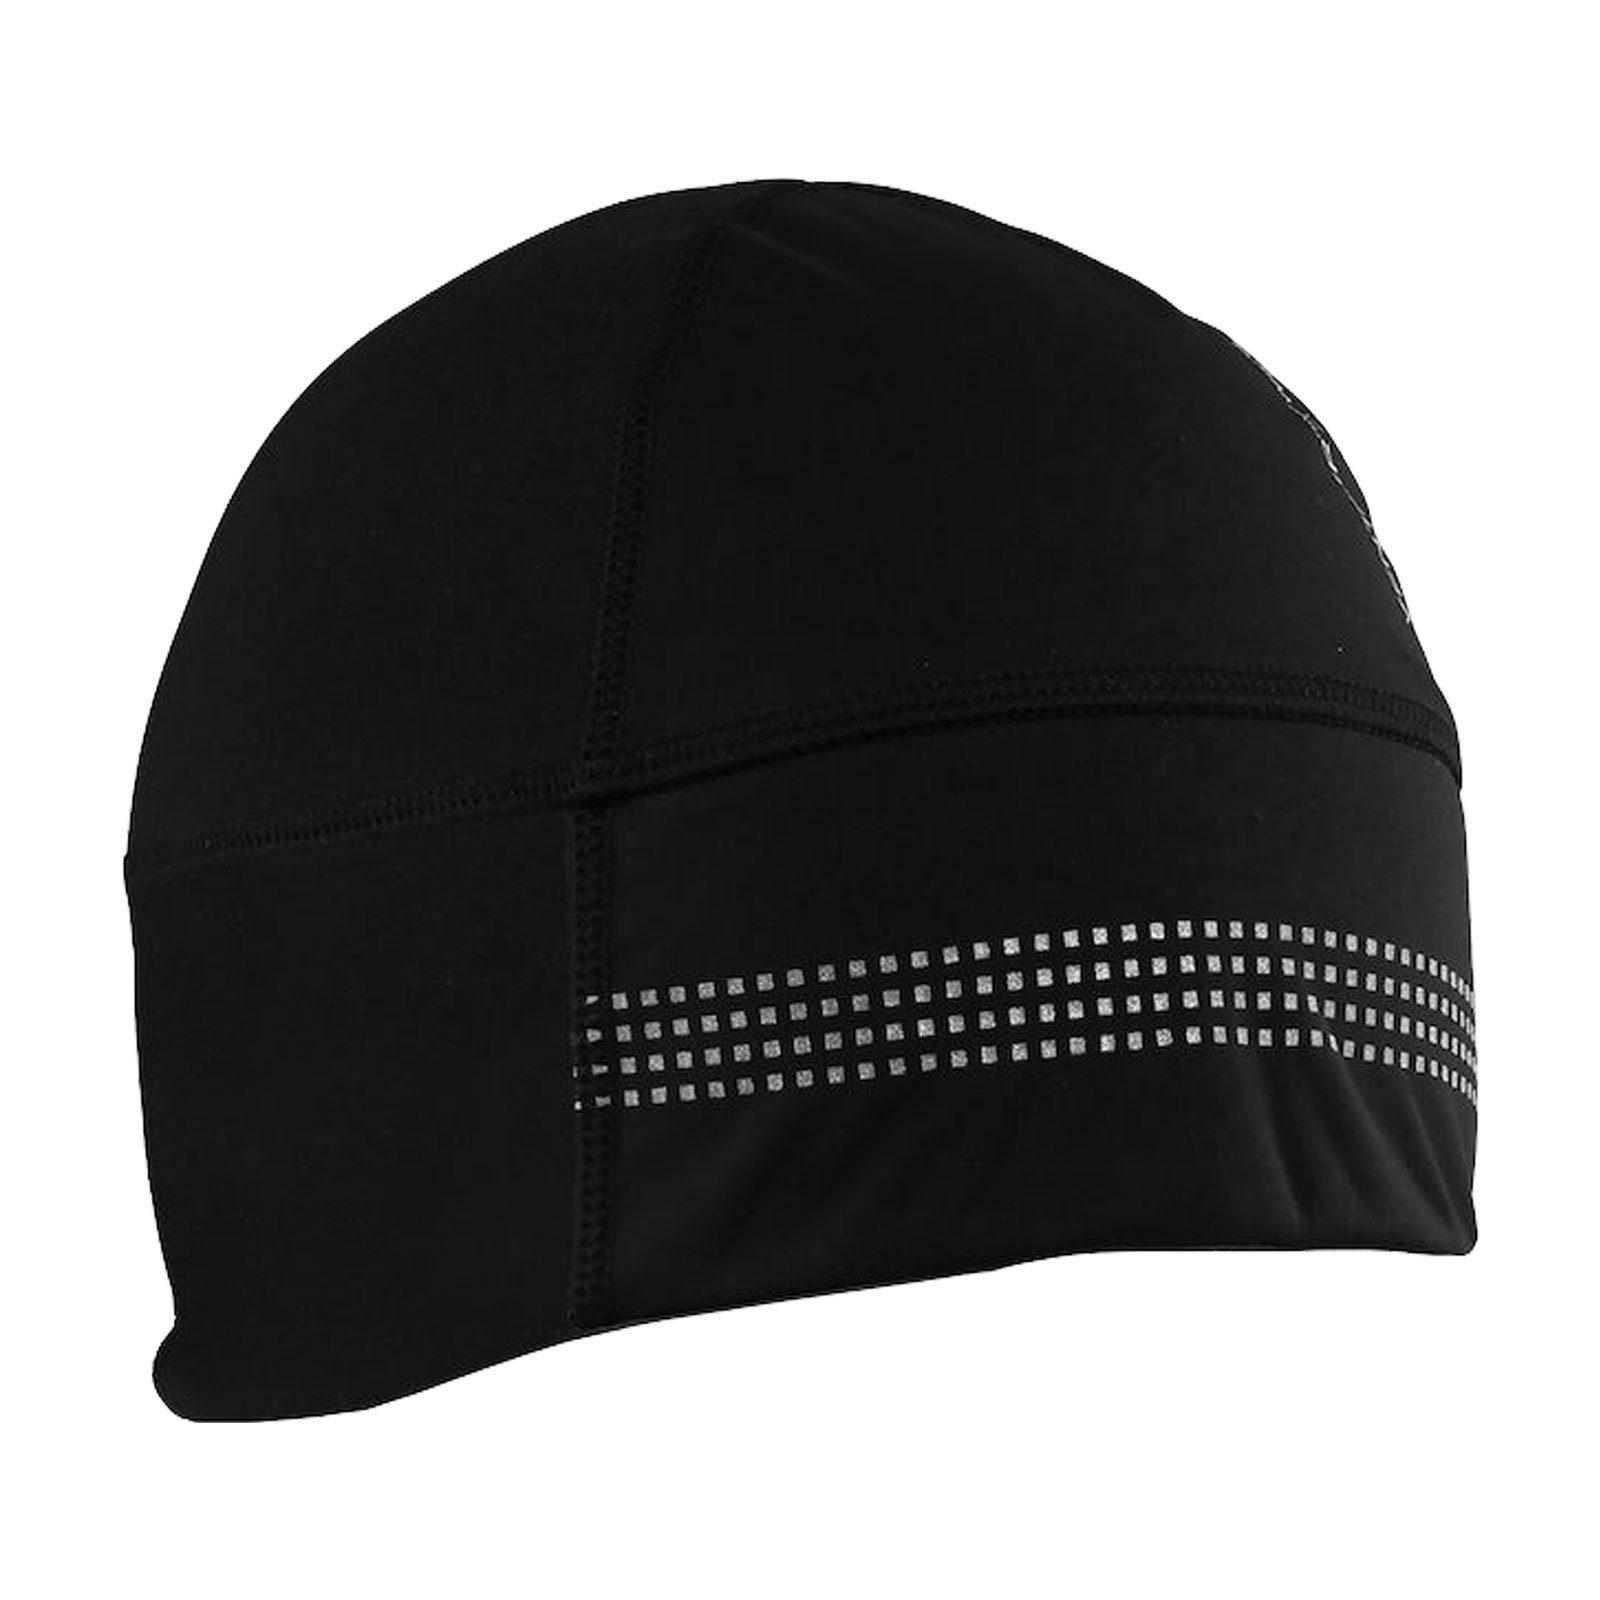 Craft Skimütze Shelter Hat 2.0 mit reflektierenden Elementen 999000 black